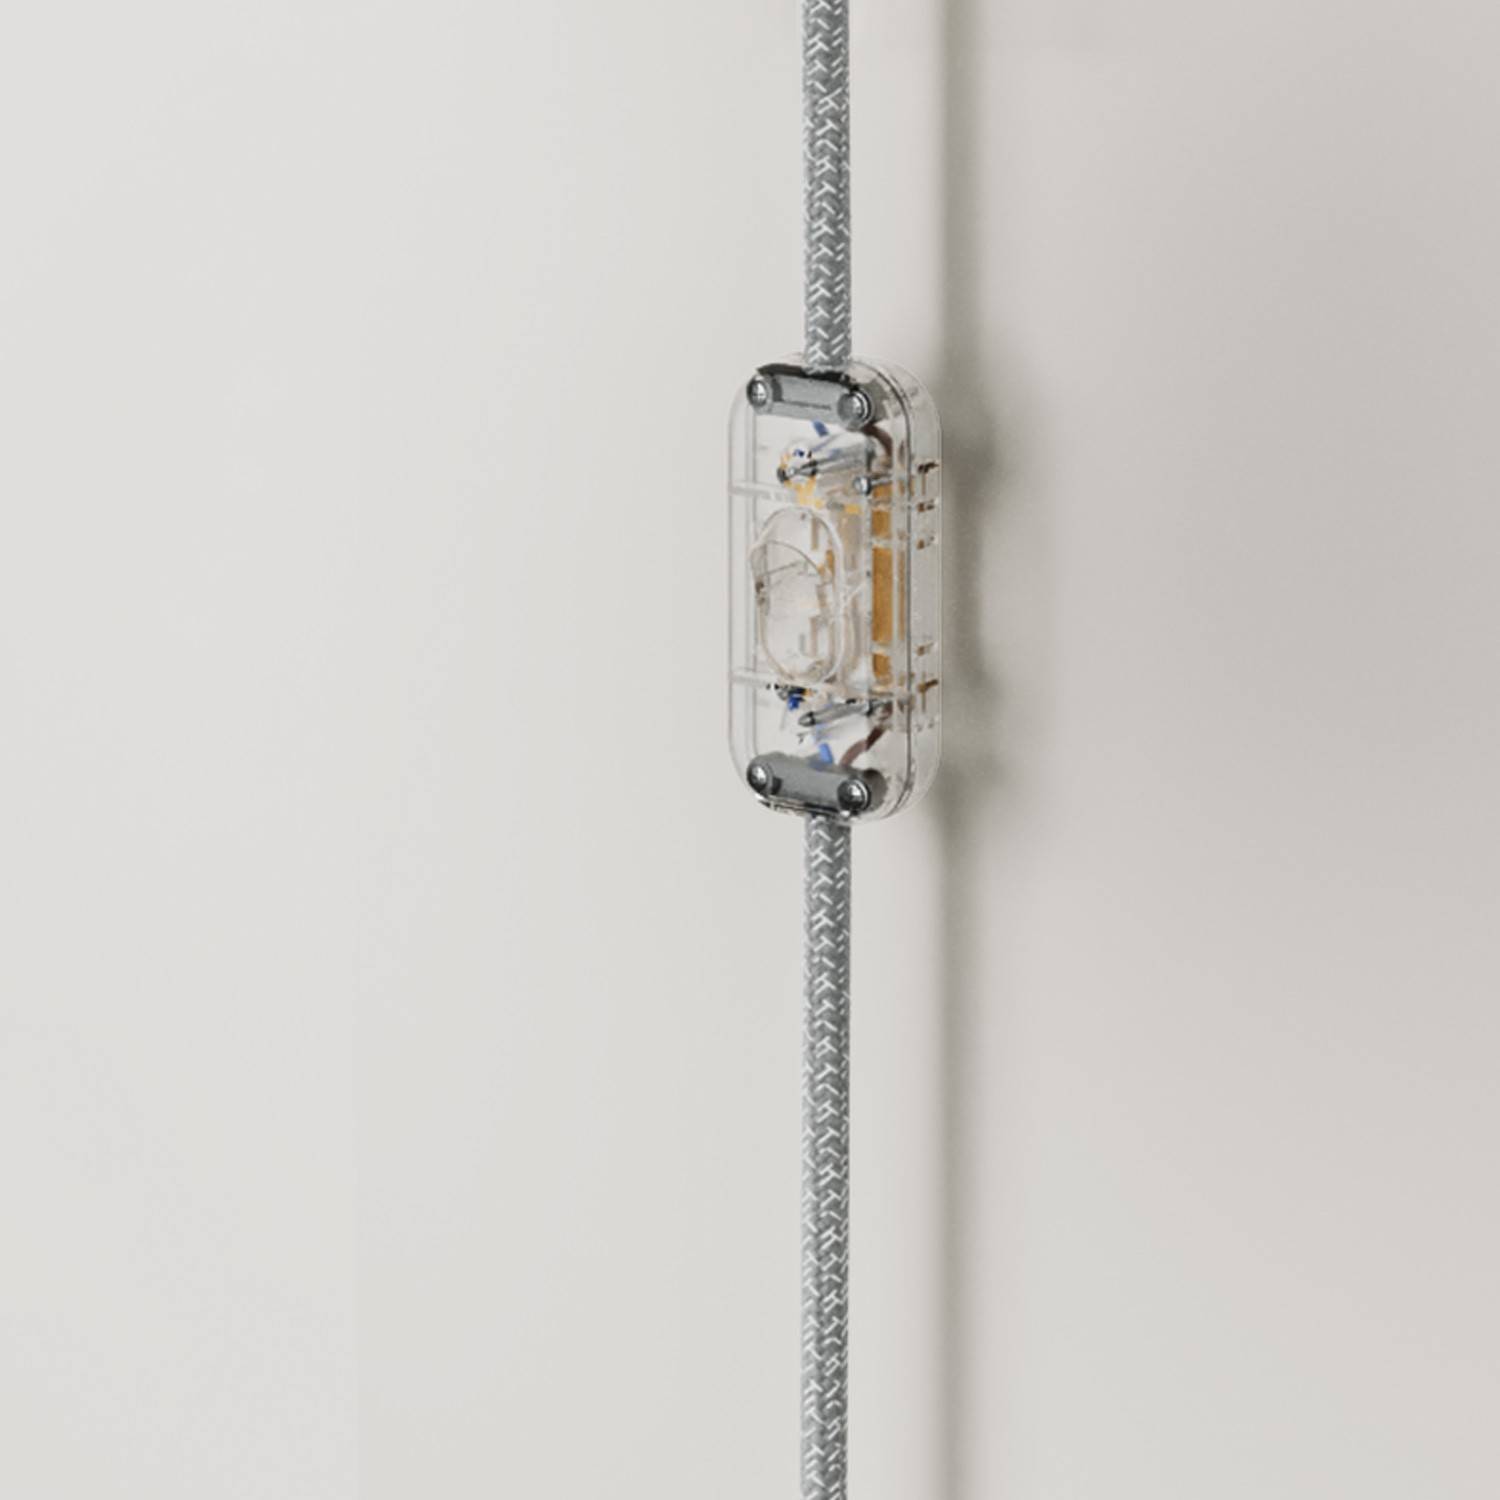 Kovové nástěnné svítidlo Applique se zástrčkou